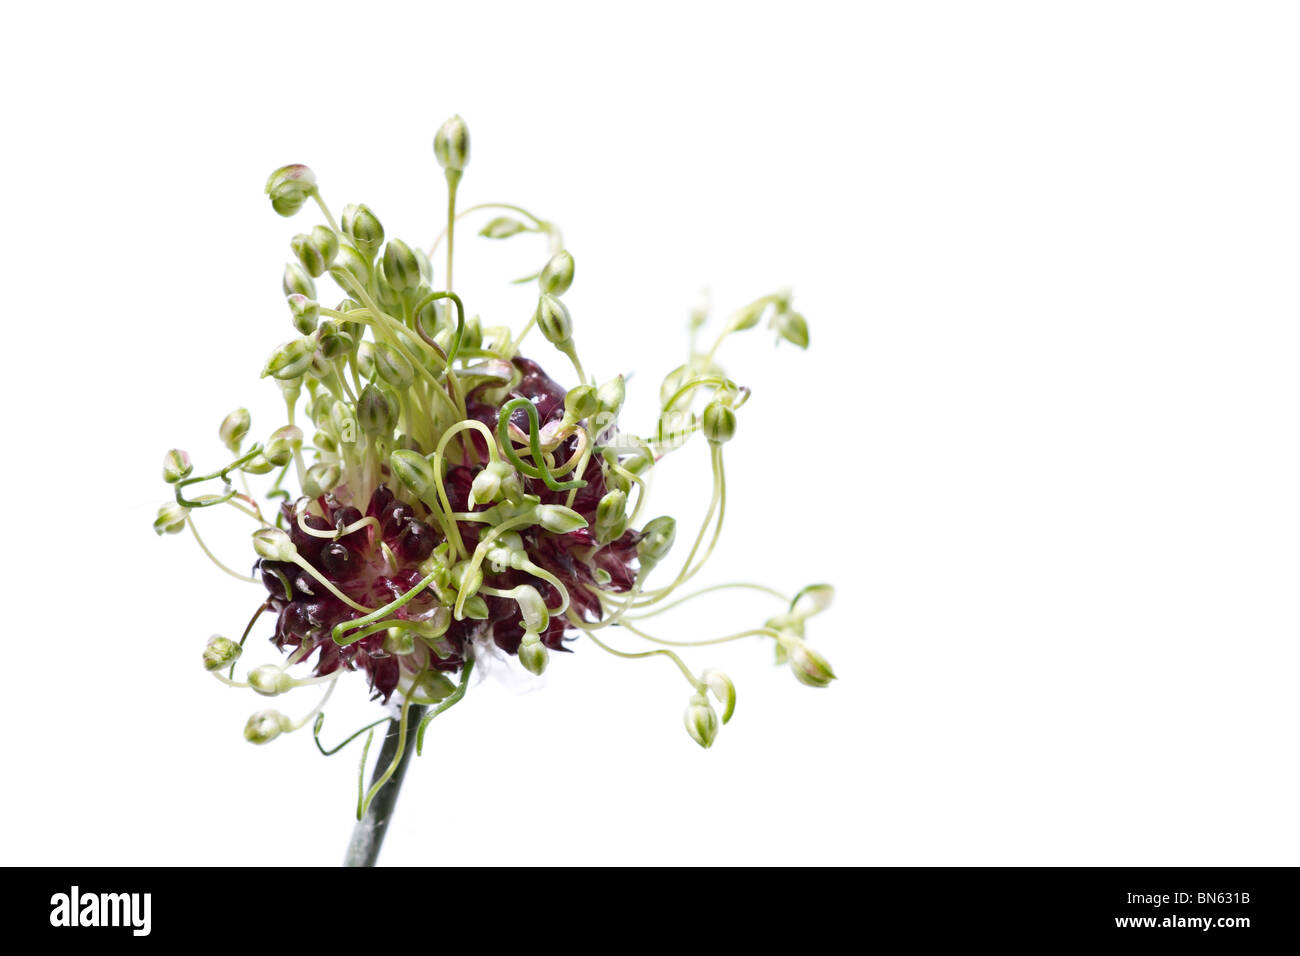 Allium vineale Hair on white background Stock Photo